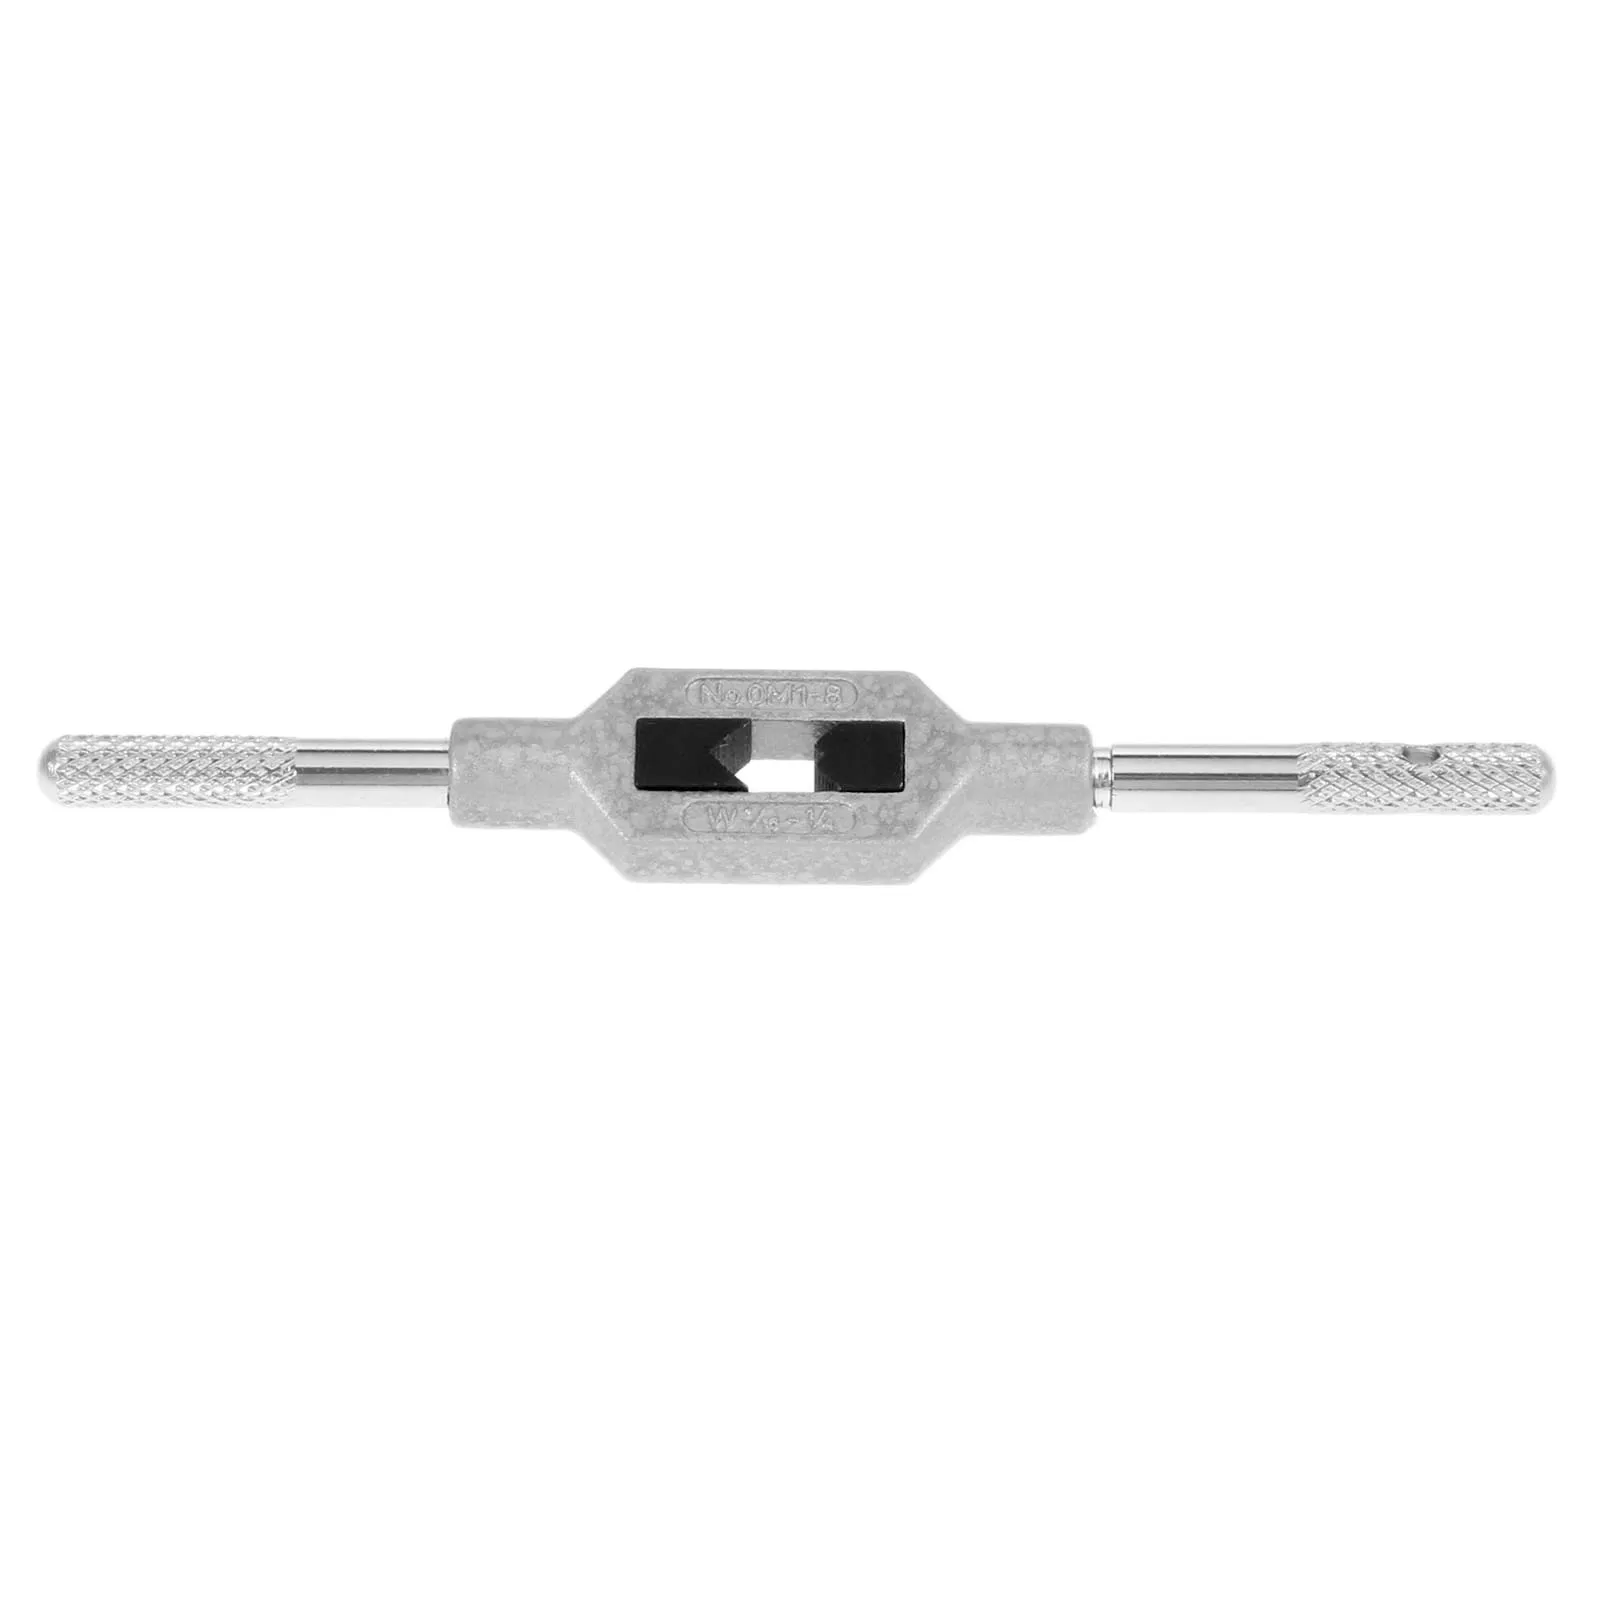 DRELD регулируемый гаечный ключ для 1/16-1/" M1-M8 резьба американский стандарт ручка коснитесь расширитель инструменты для металлообработки